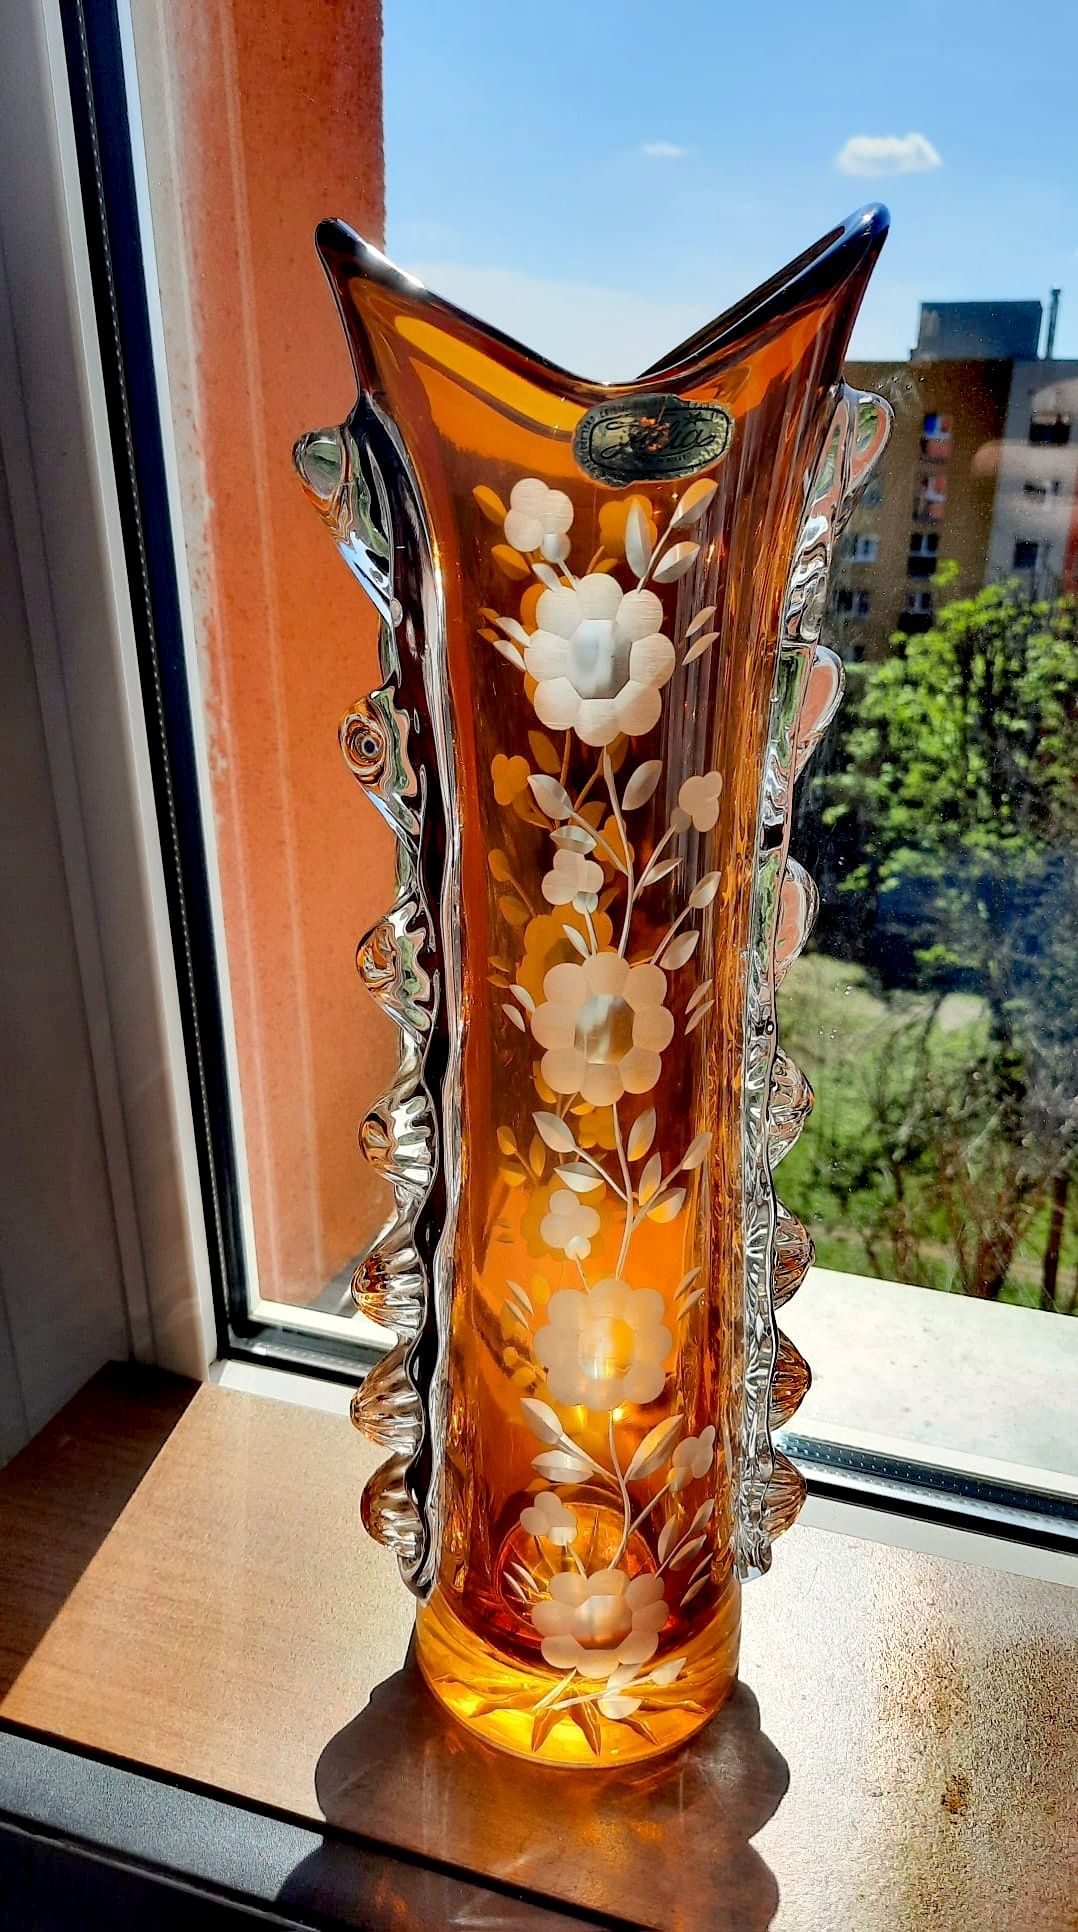 Śliczny, duży, wazon kryształowy PRL.